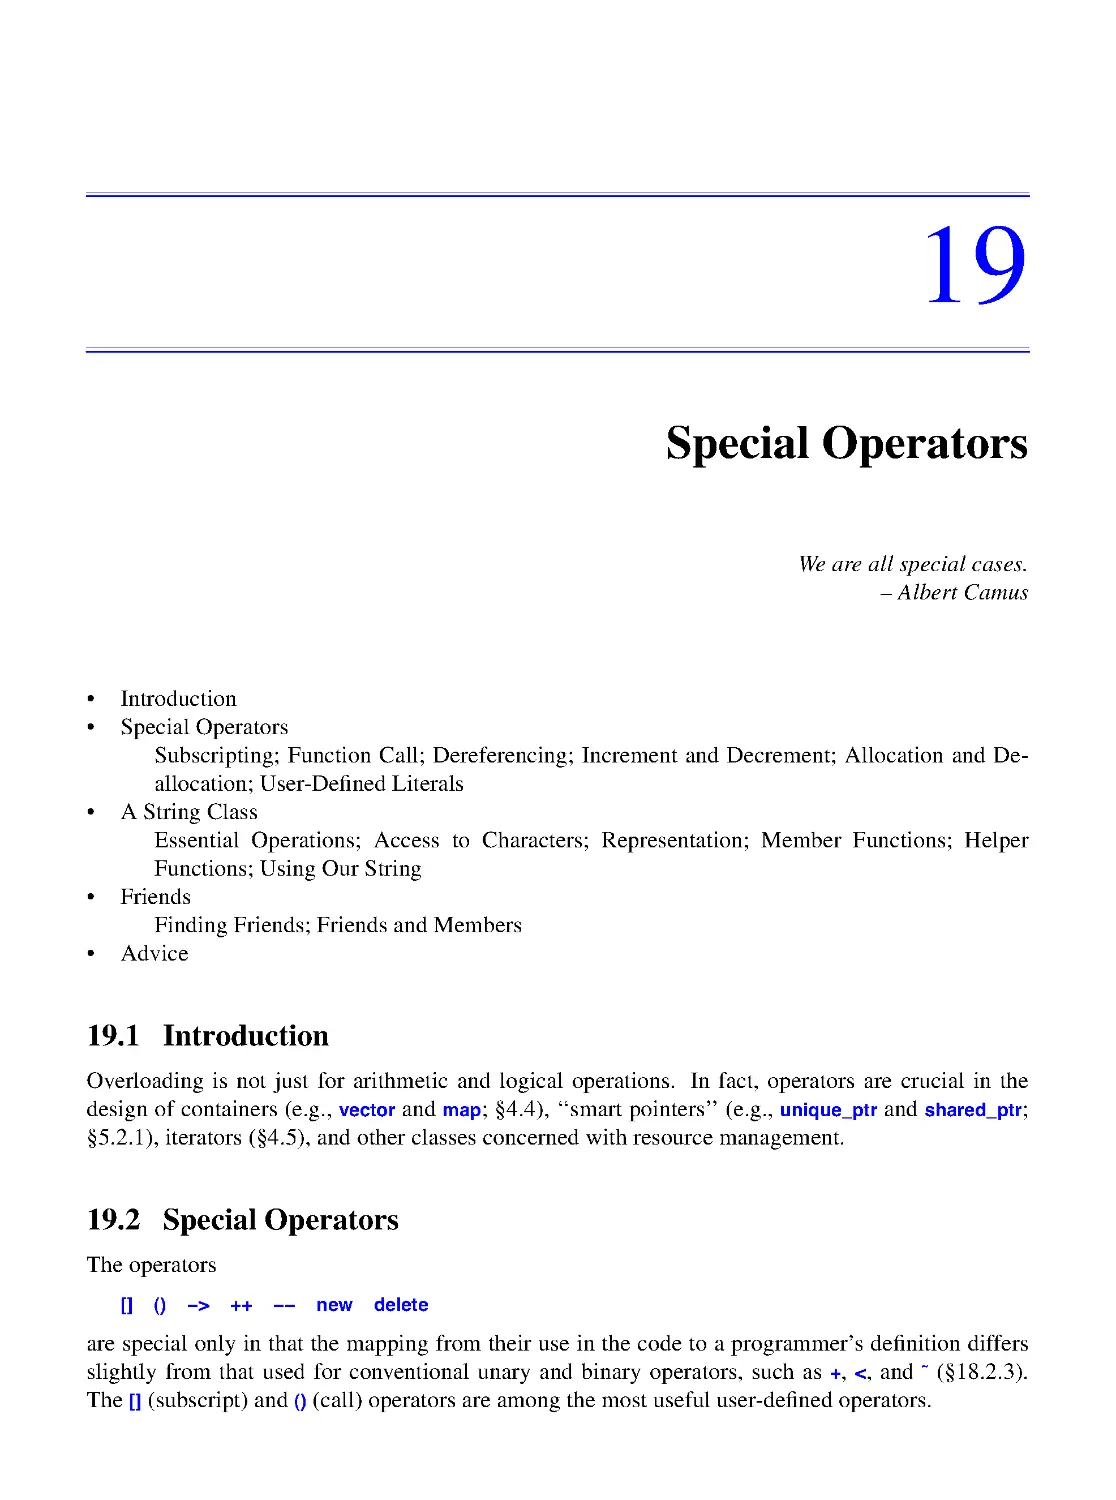 19. Special Operators